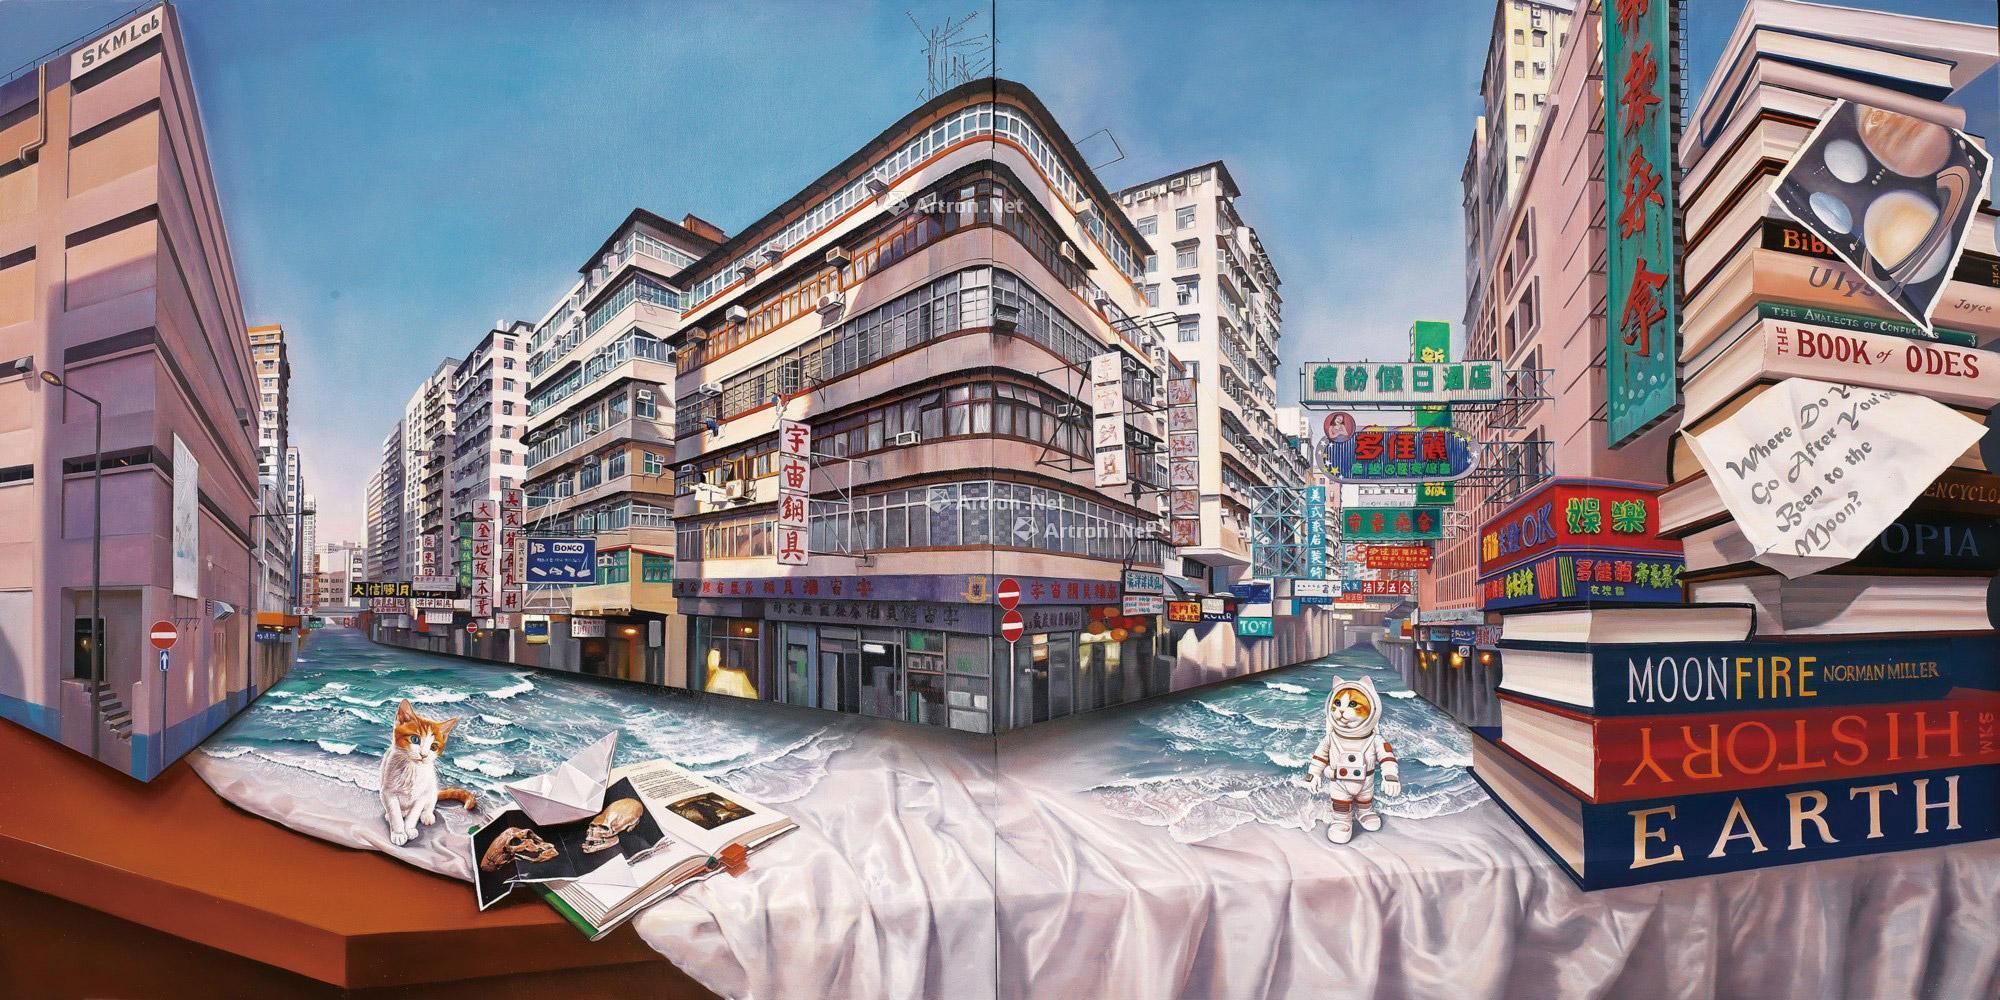 18年作桌上的香港上海街油彩桦木板 双联作 拍卖品 图片 价格 鉴赏 油画 雅昌艺术品拍卖网